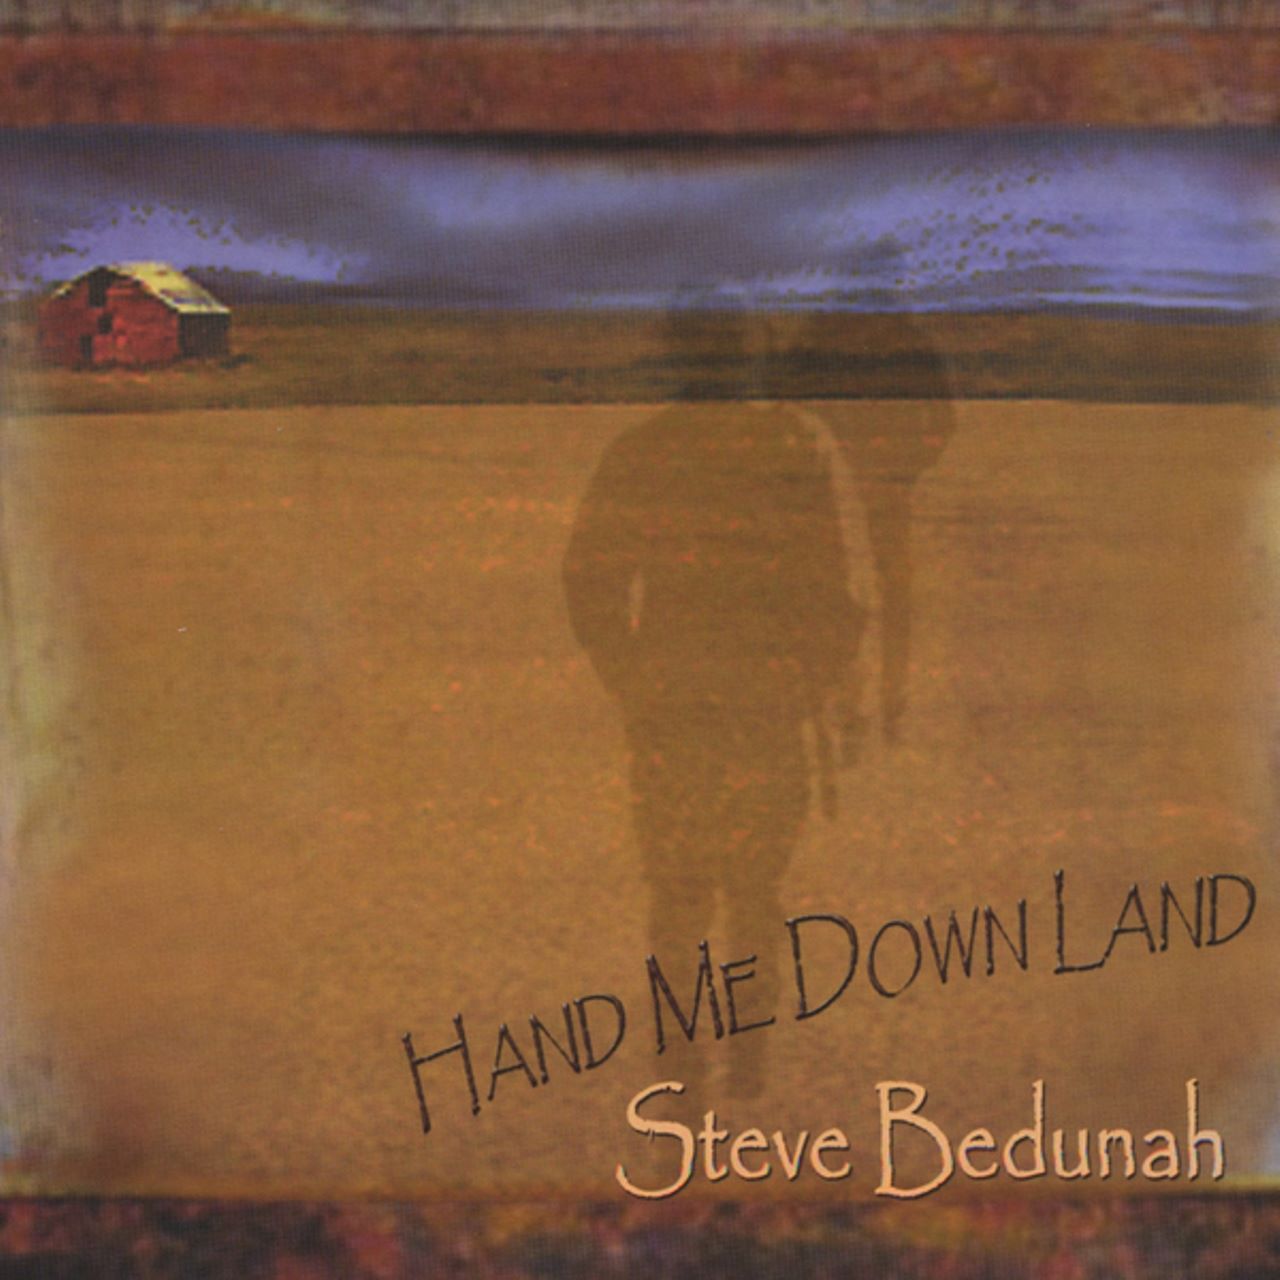 Steve Bedunah - Hand Me Down Land cover album